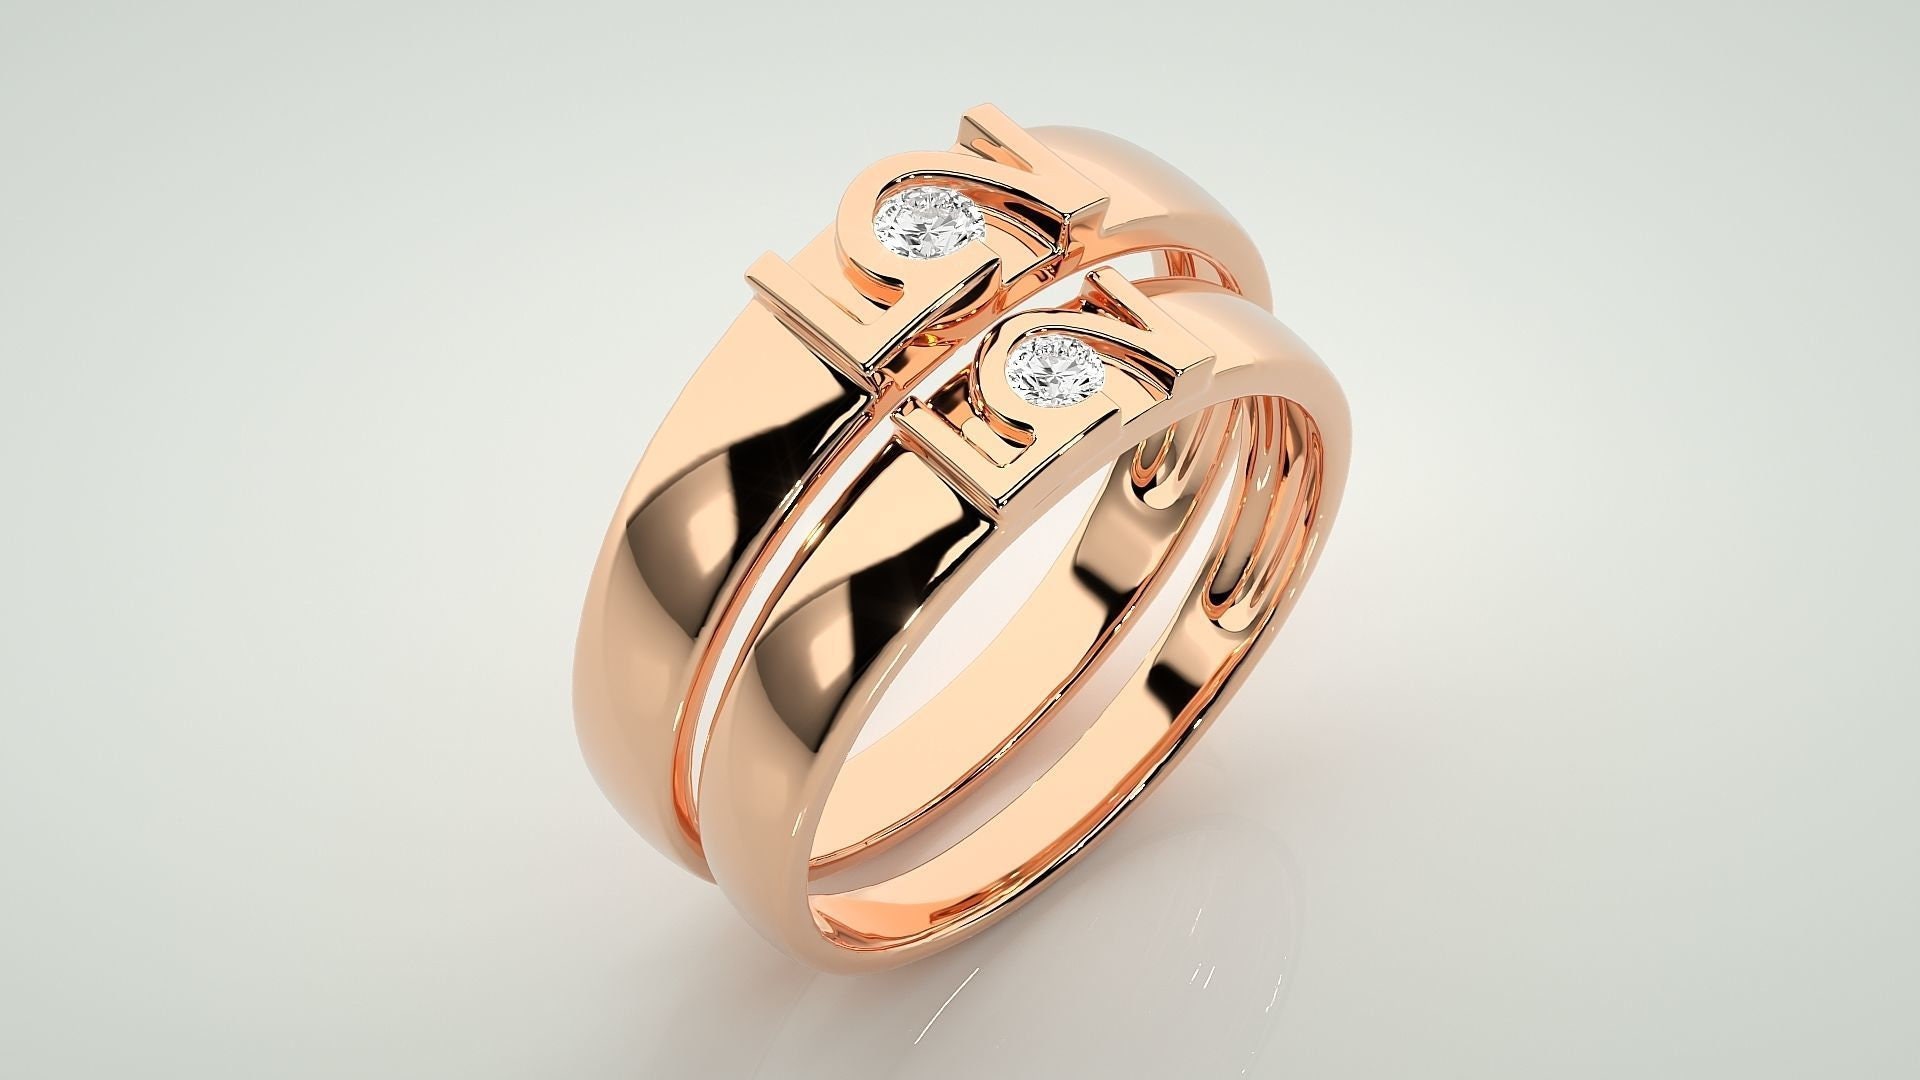 Genuini semplici anelli di coppia in argento Sterling 925 coppia fedi  nuziali fidanzamento coppia uomini e donne regali gioielli anniversario -  AliExpress